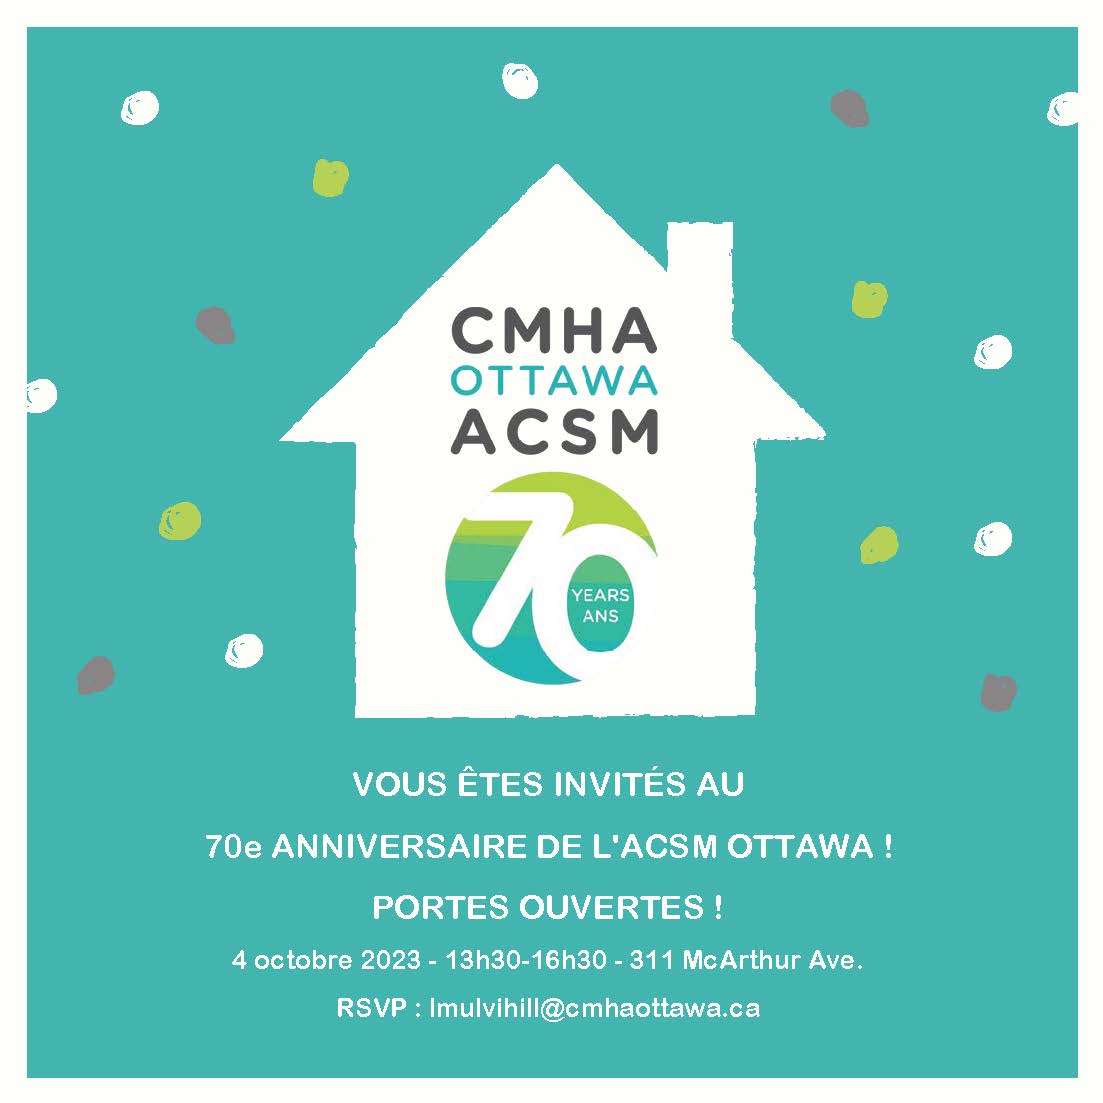 La journée portes ouvertes du 70e anniversaire de l'ACSM d’Ottawa